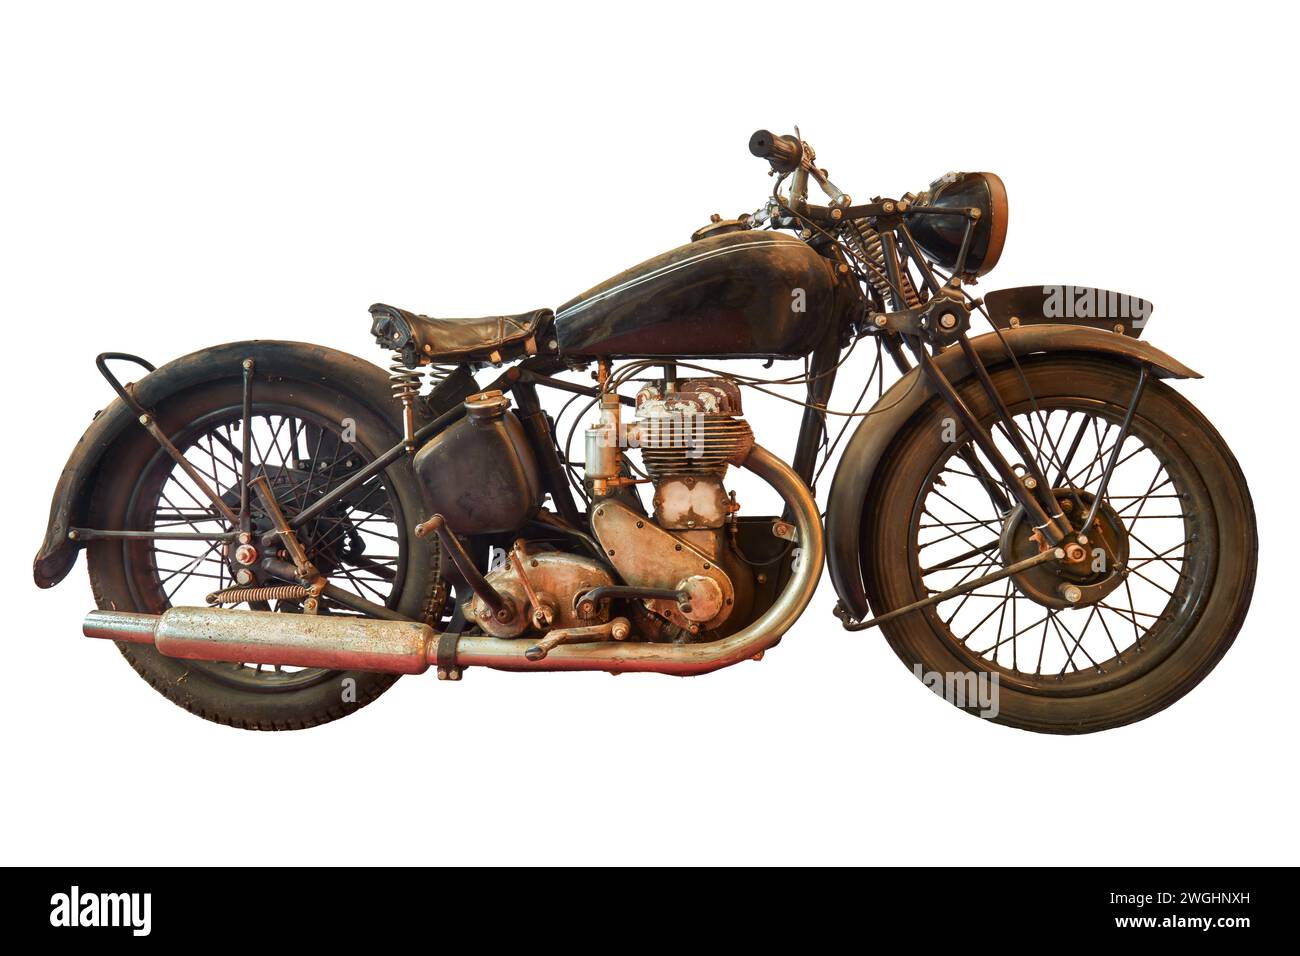 Vista laterale di un'antica motocicletta intemprata Foto Stock